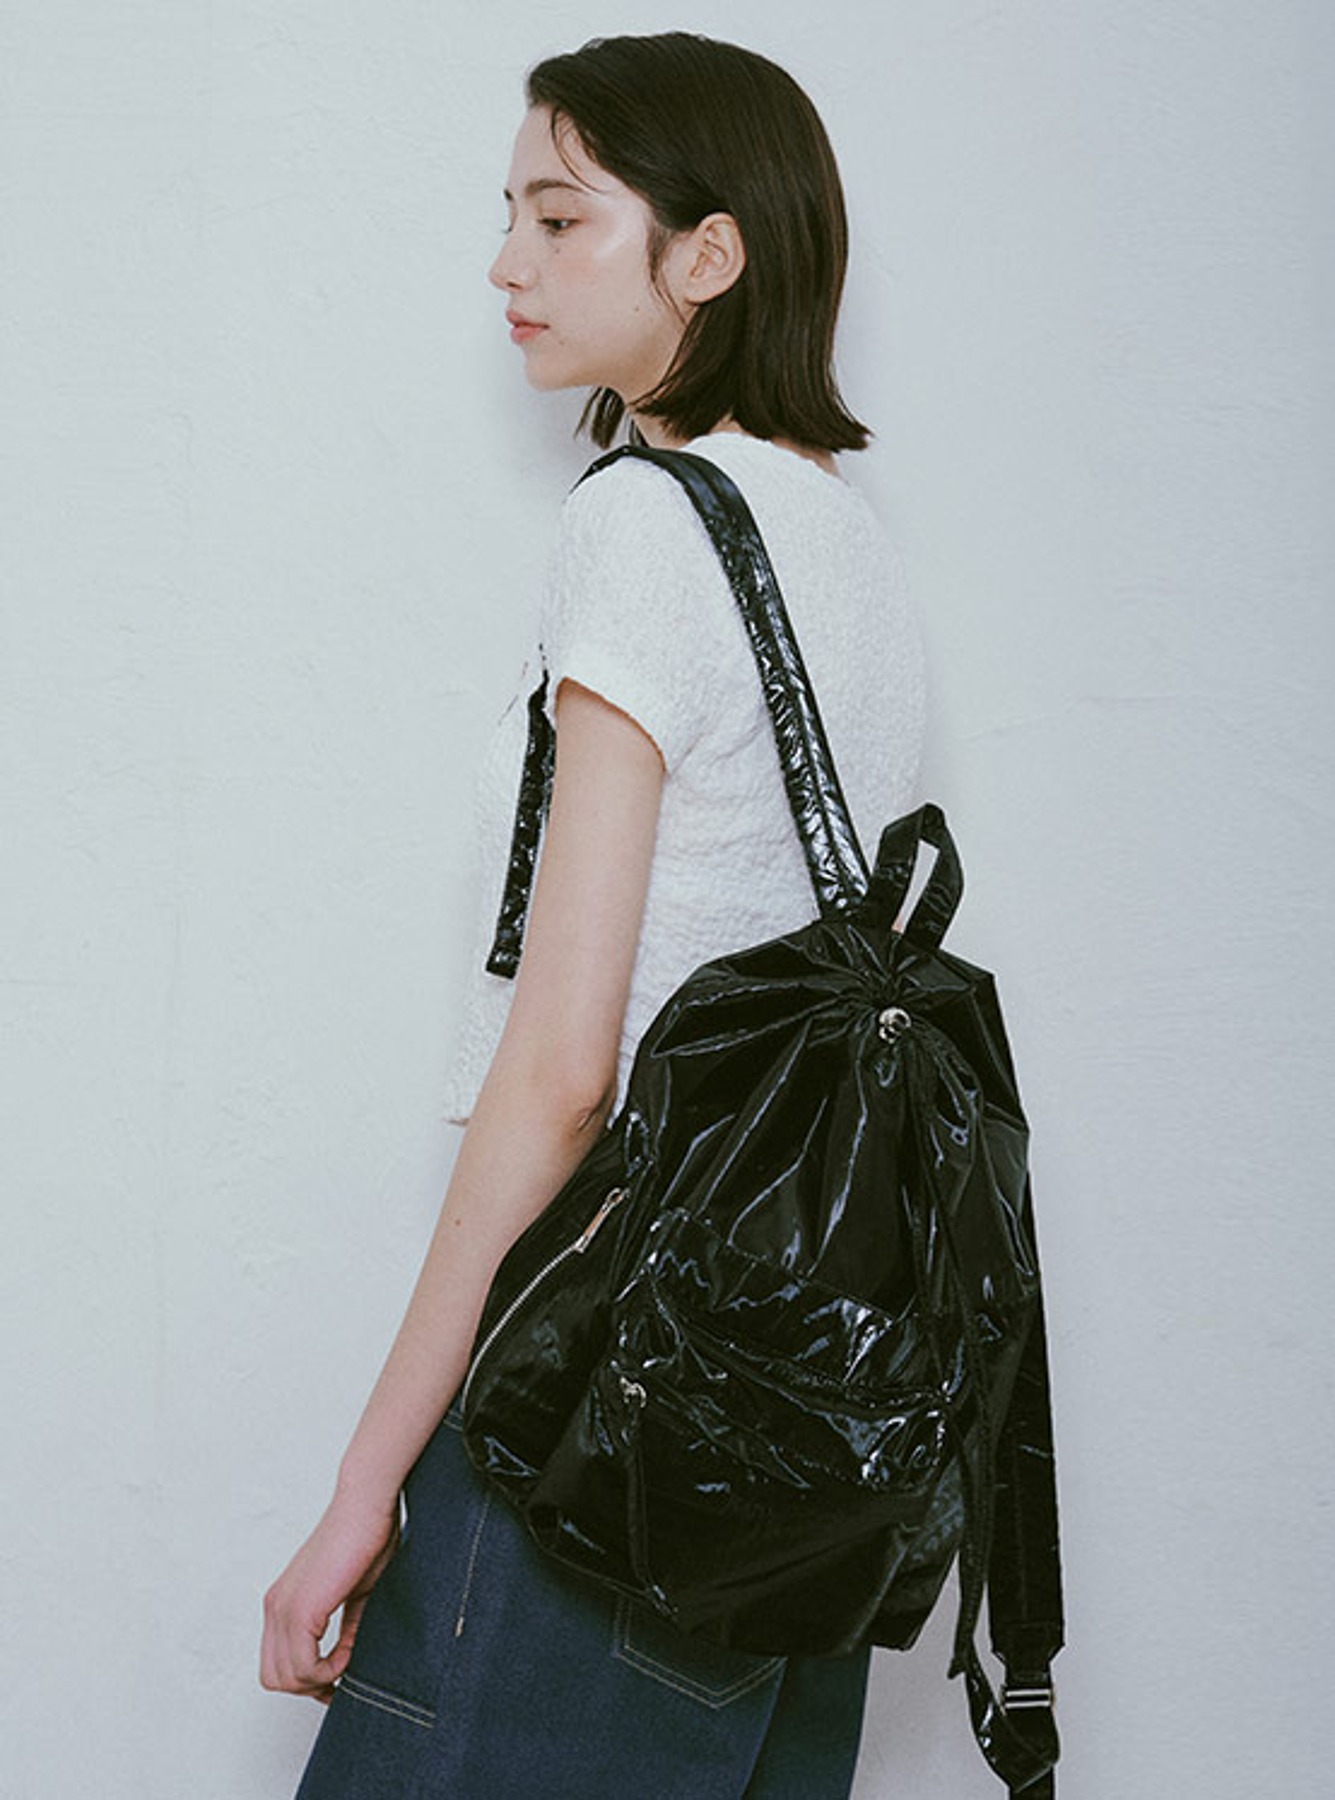 Irina Backpack Small in Black UB3AC020-10